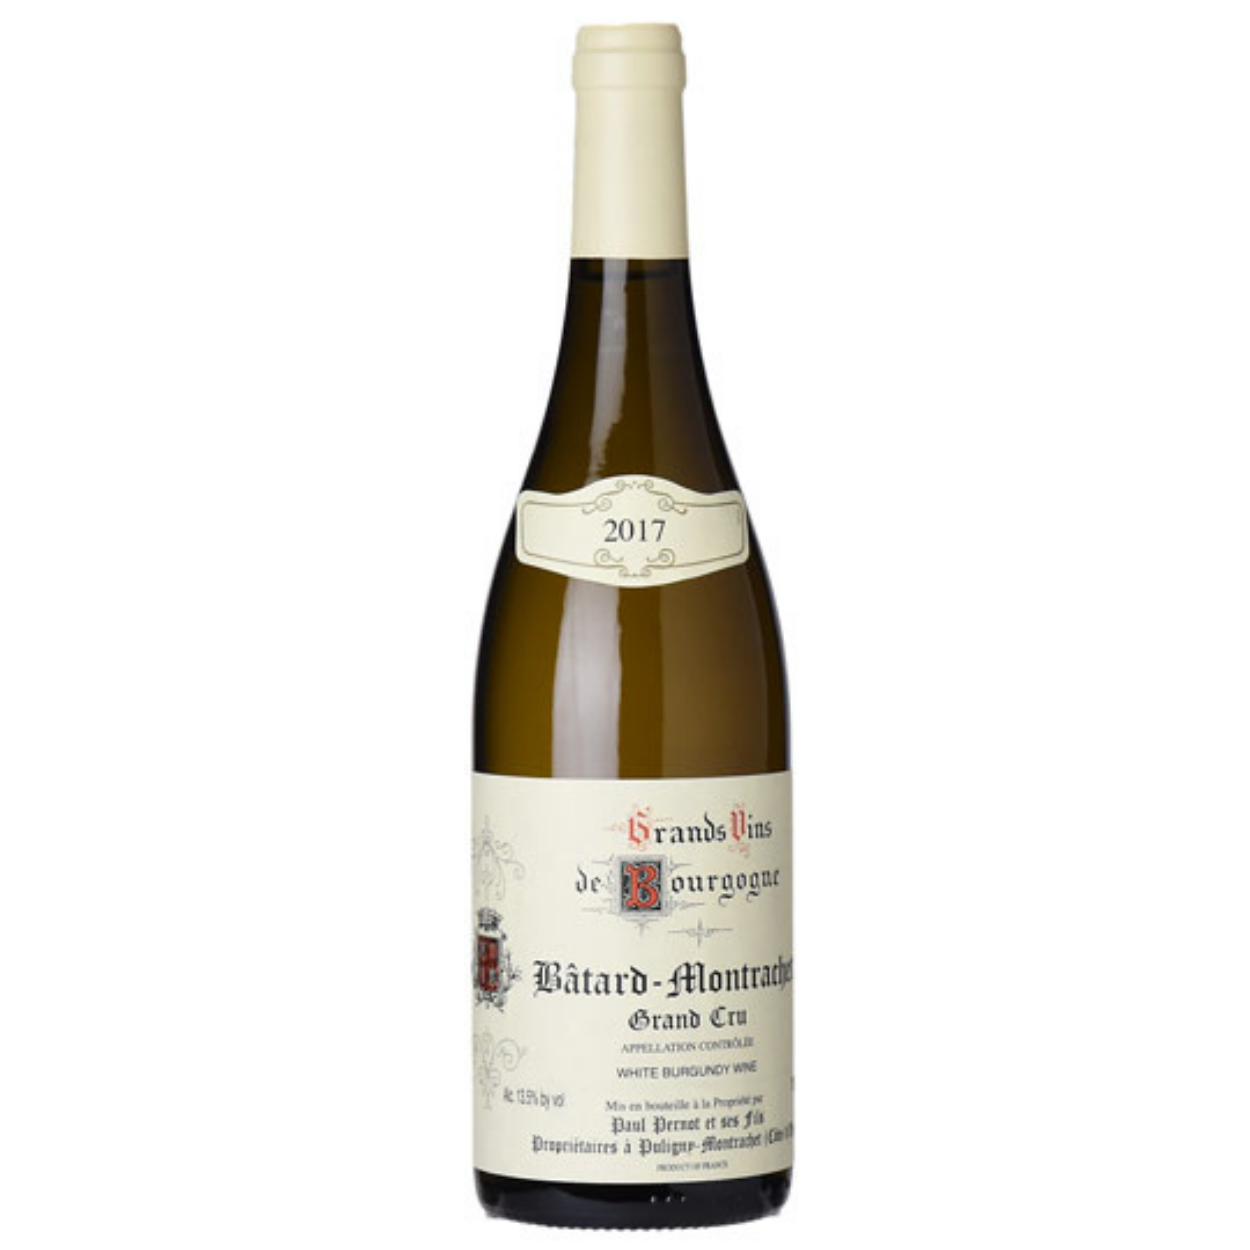 2017 Domaine Paul Pernot Bienvenues-Batard-Montrachet Grand Cru Cote de Beaune France - The Wine Connection